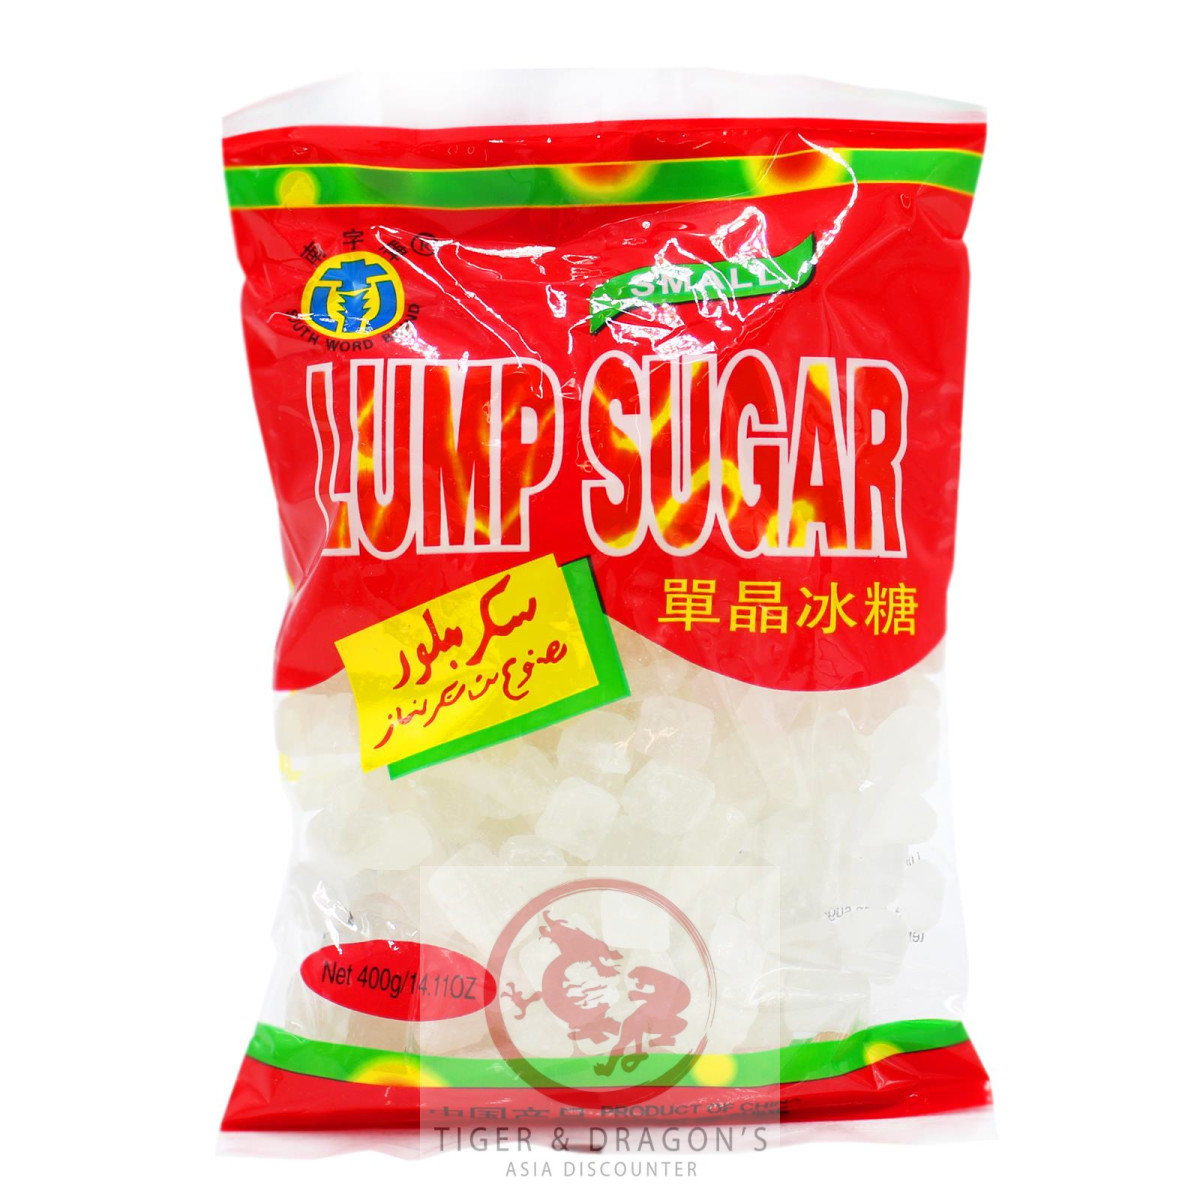 South Word Brand Lump Sugar Weisser Kandiszucker 400g